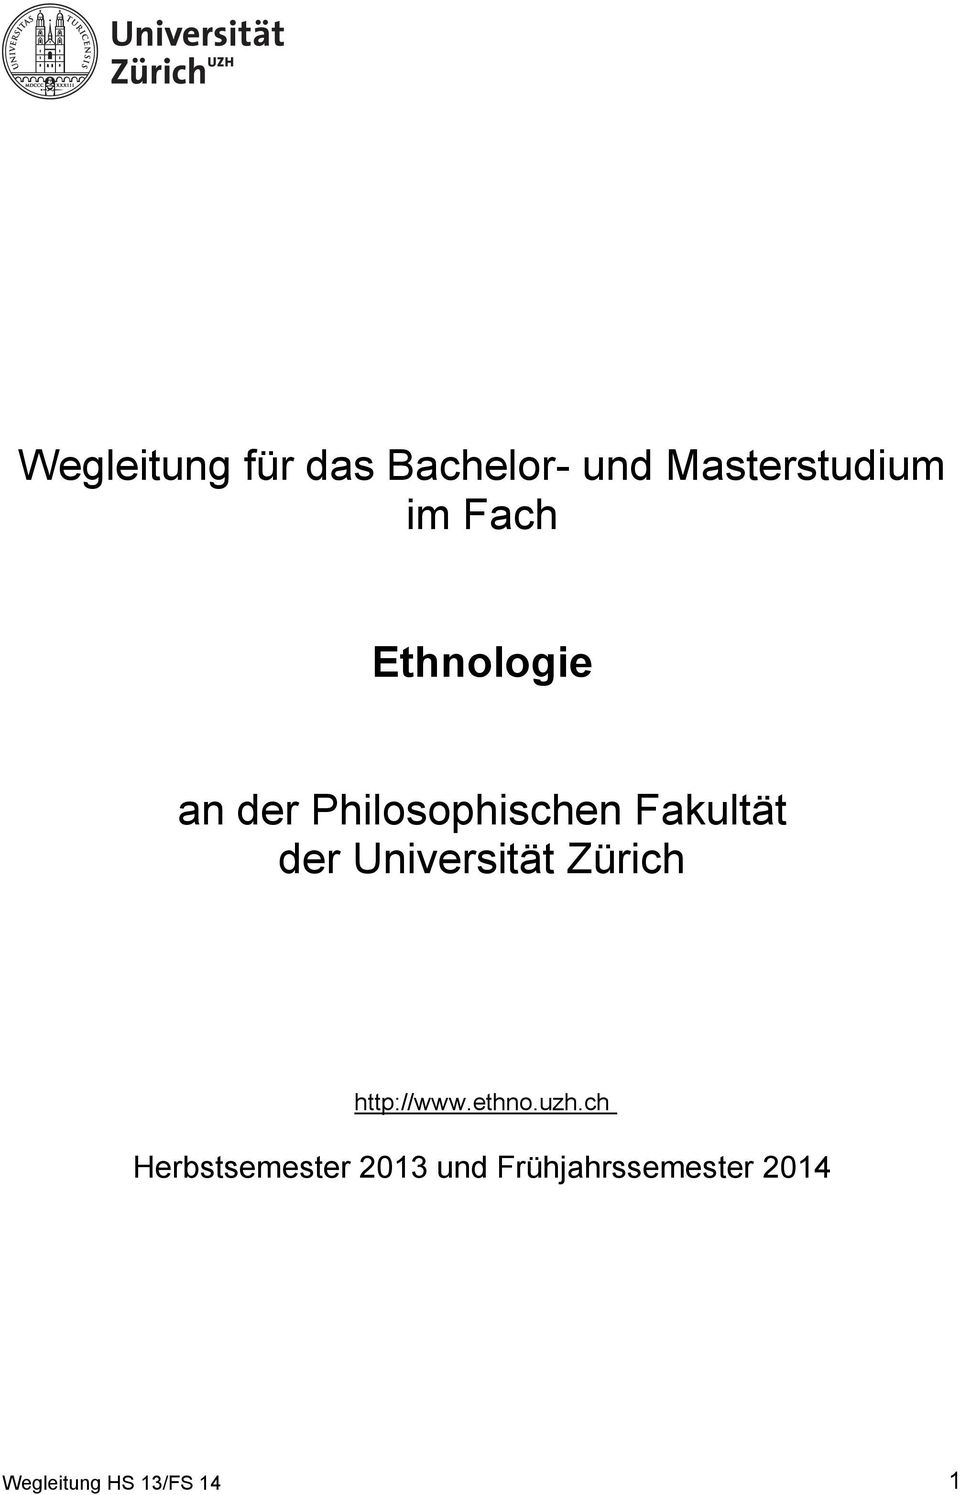 Universität Zürich http://www.ethno.uzh.